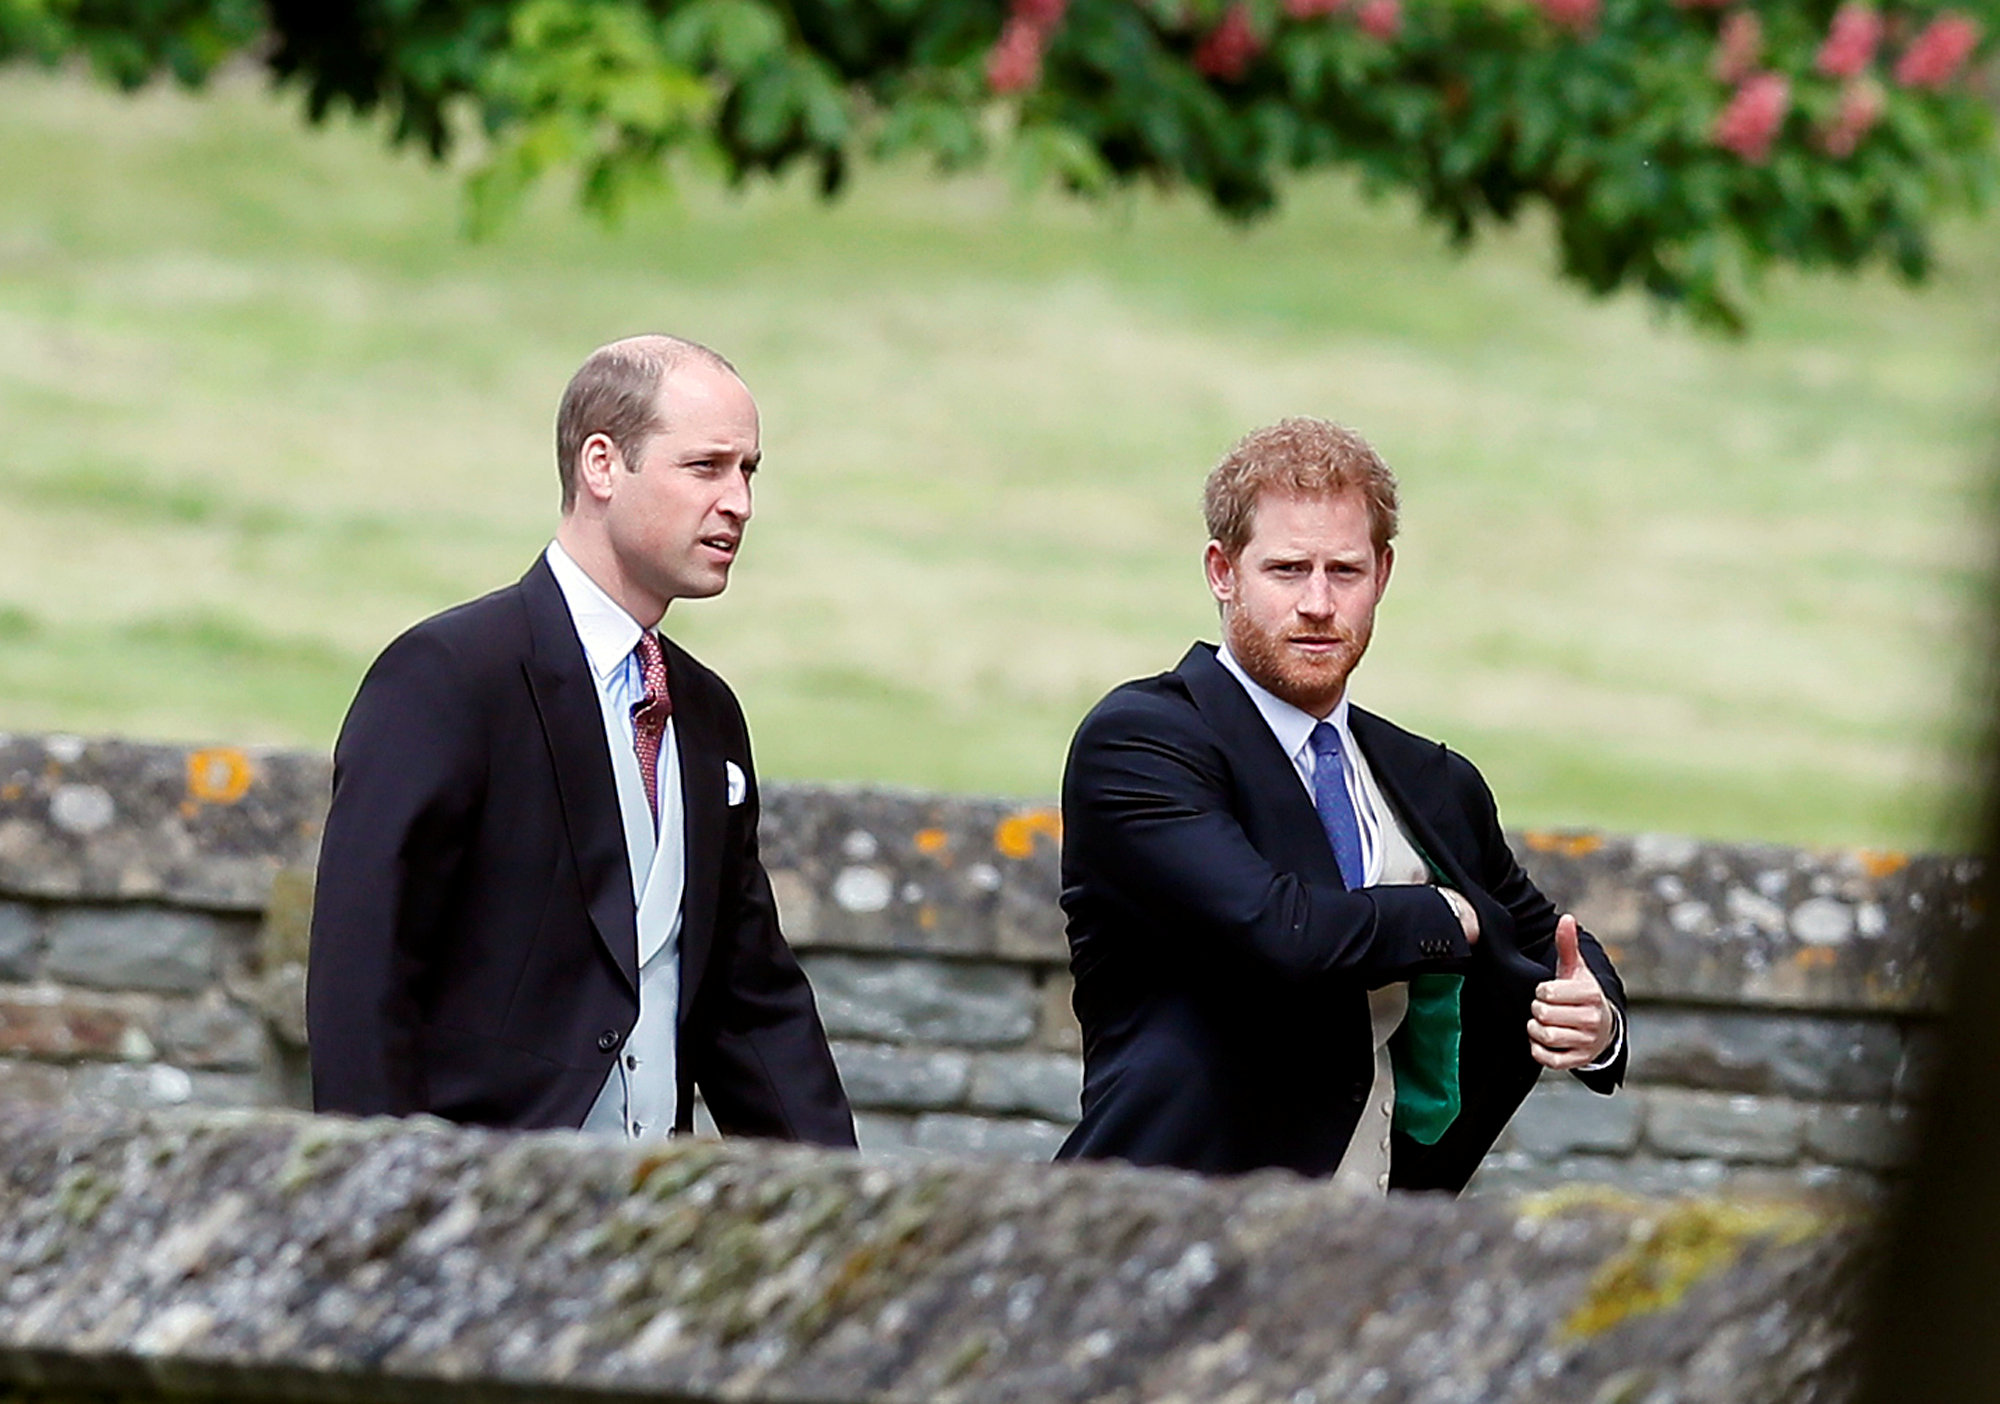 الأمير هارى والأمير وليام يحضران حفل زفاف شقيقة دوقة كامبريدج